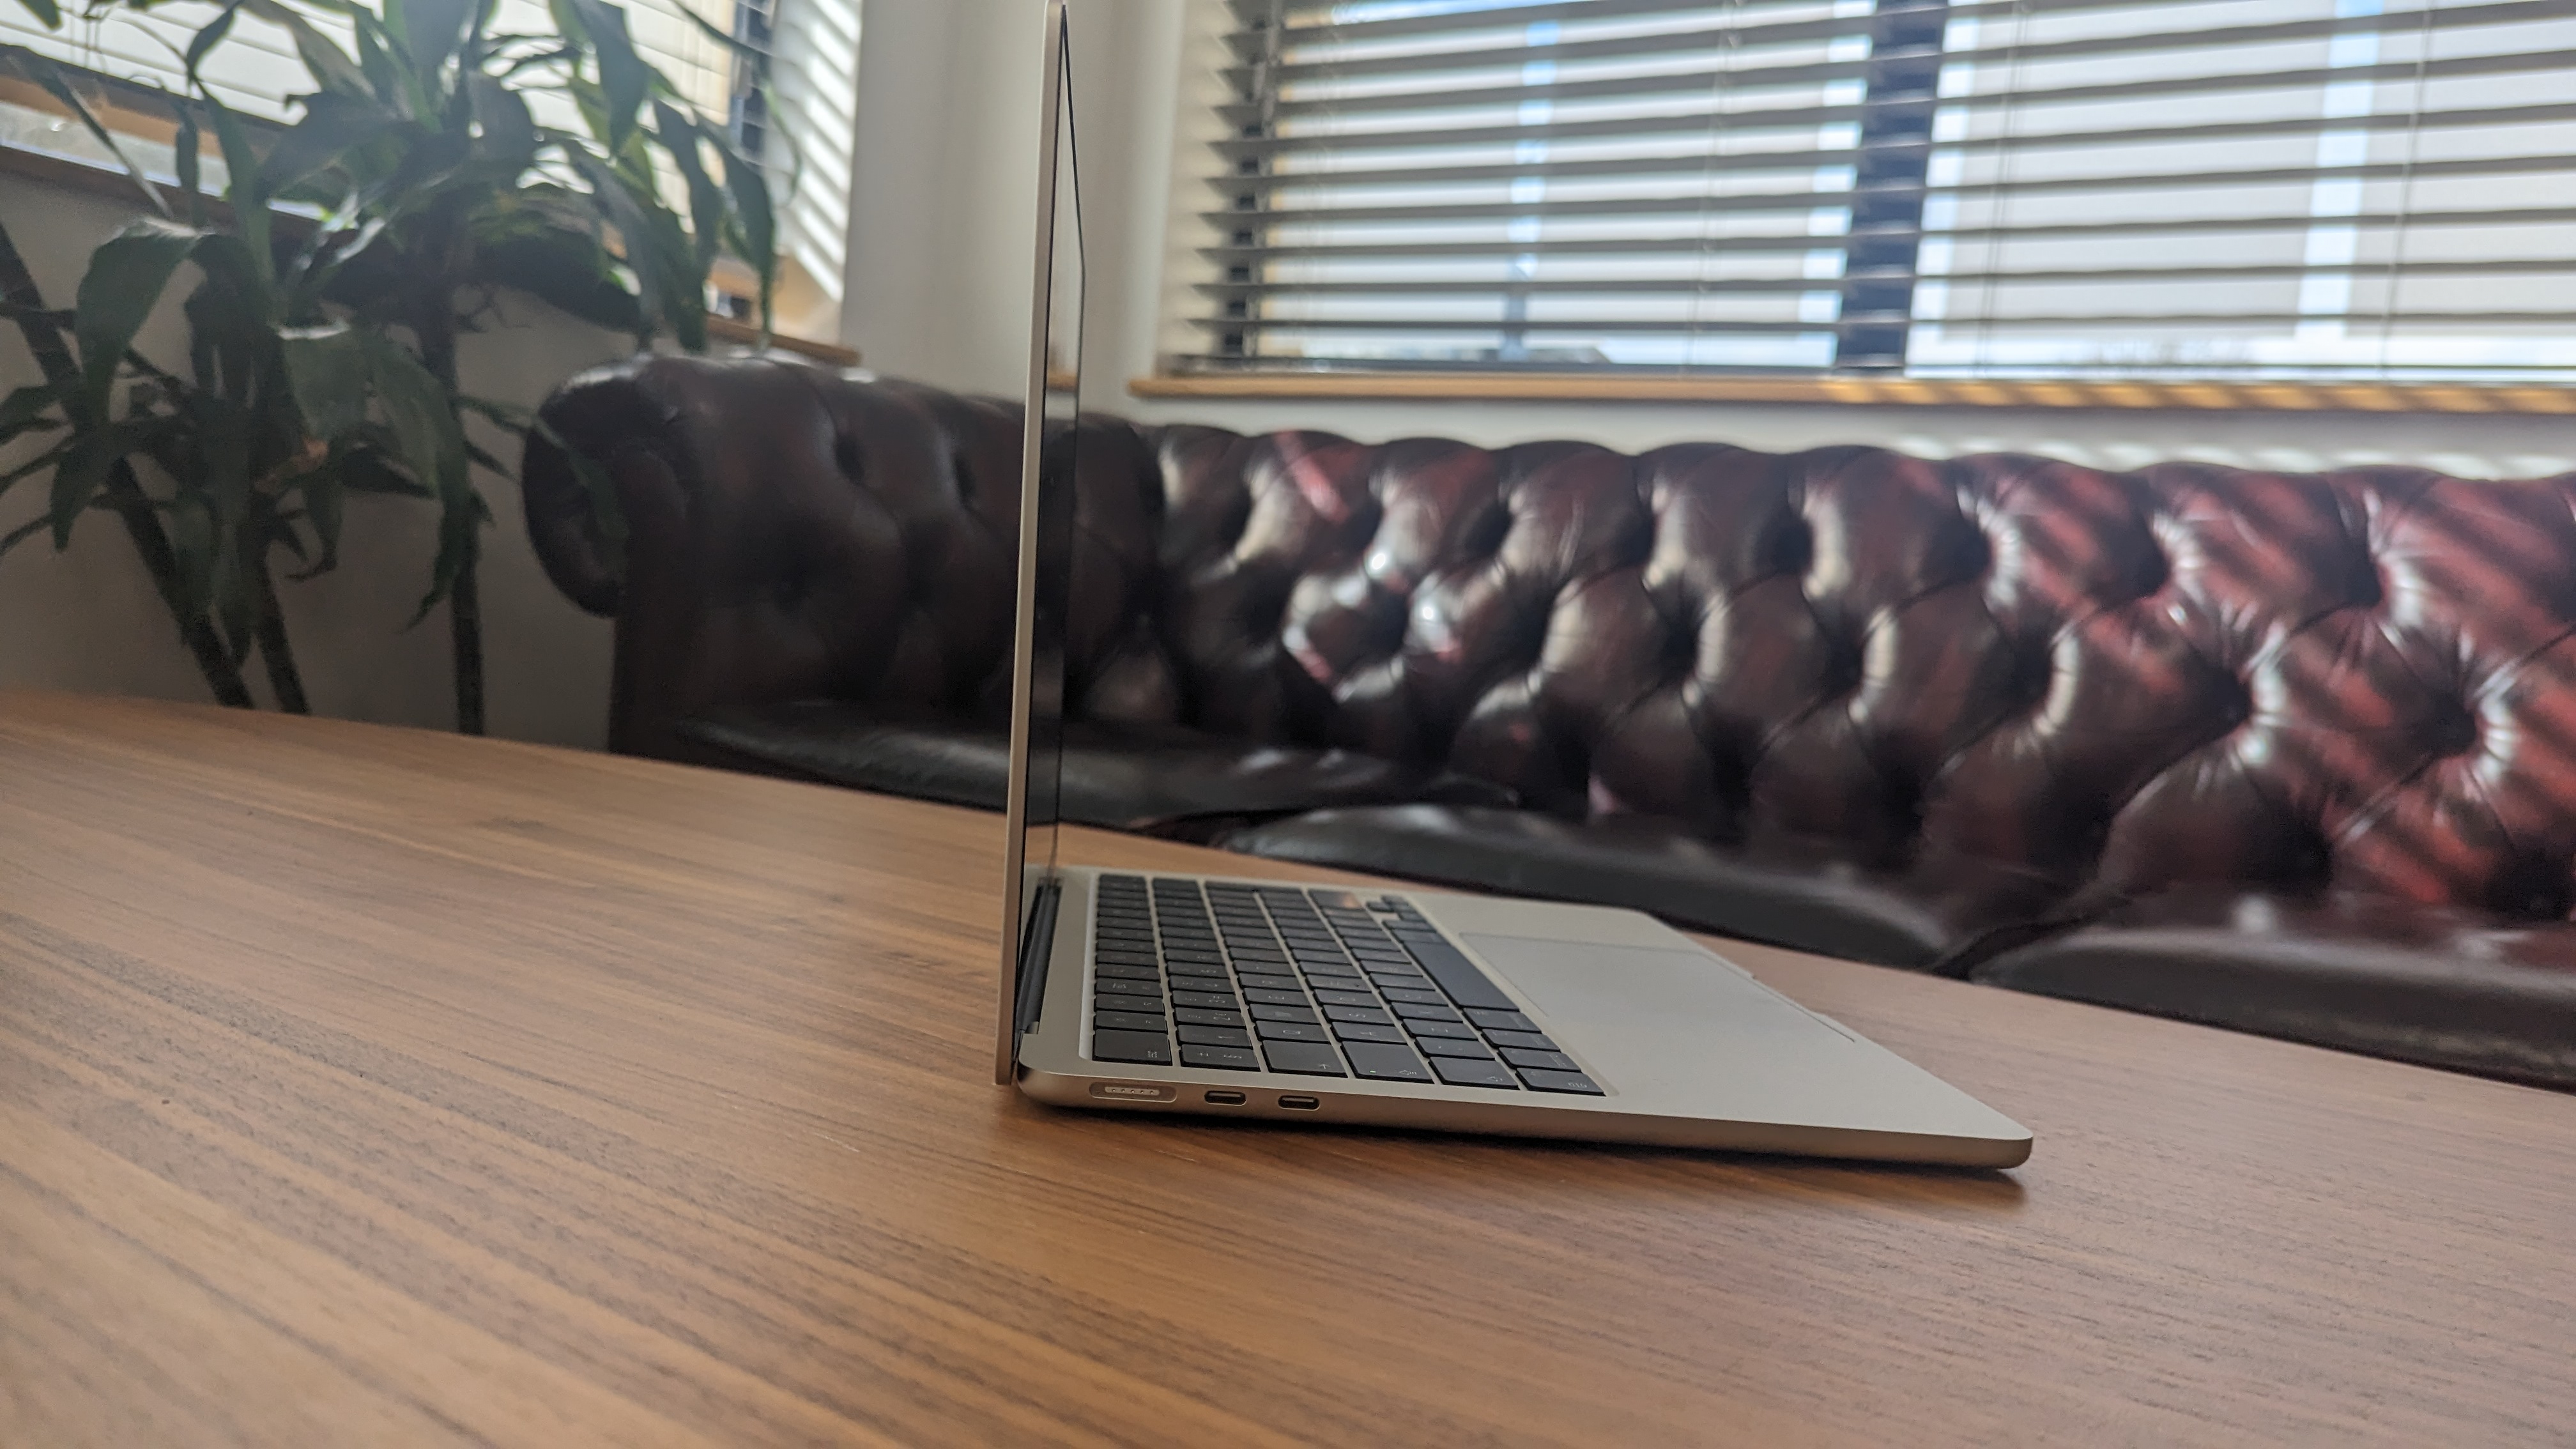 Nya MacBook Air står öppnad på ett cafébord, sedd från sidan.